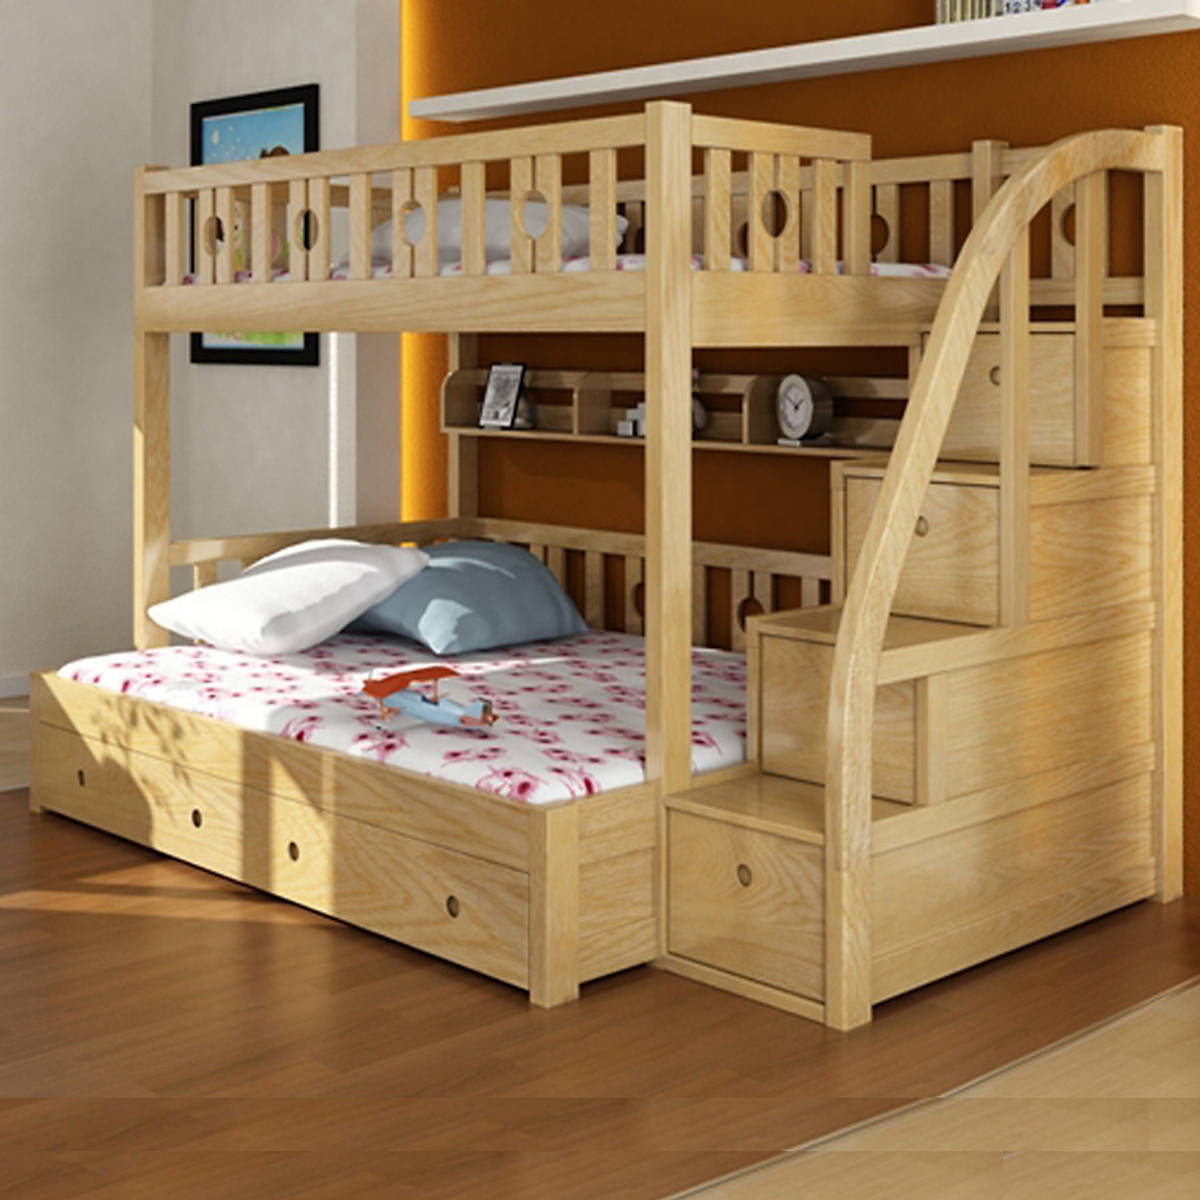 Giường tầng trẻ em tích hợp tủ quần áo bằng gỗ hiện đại, tiện nghi  